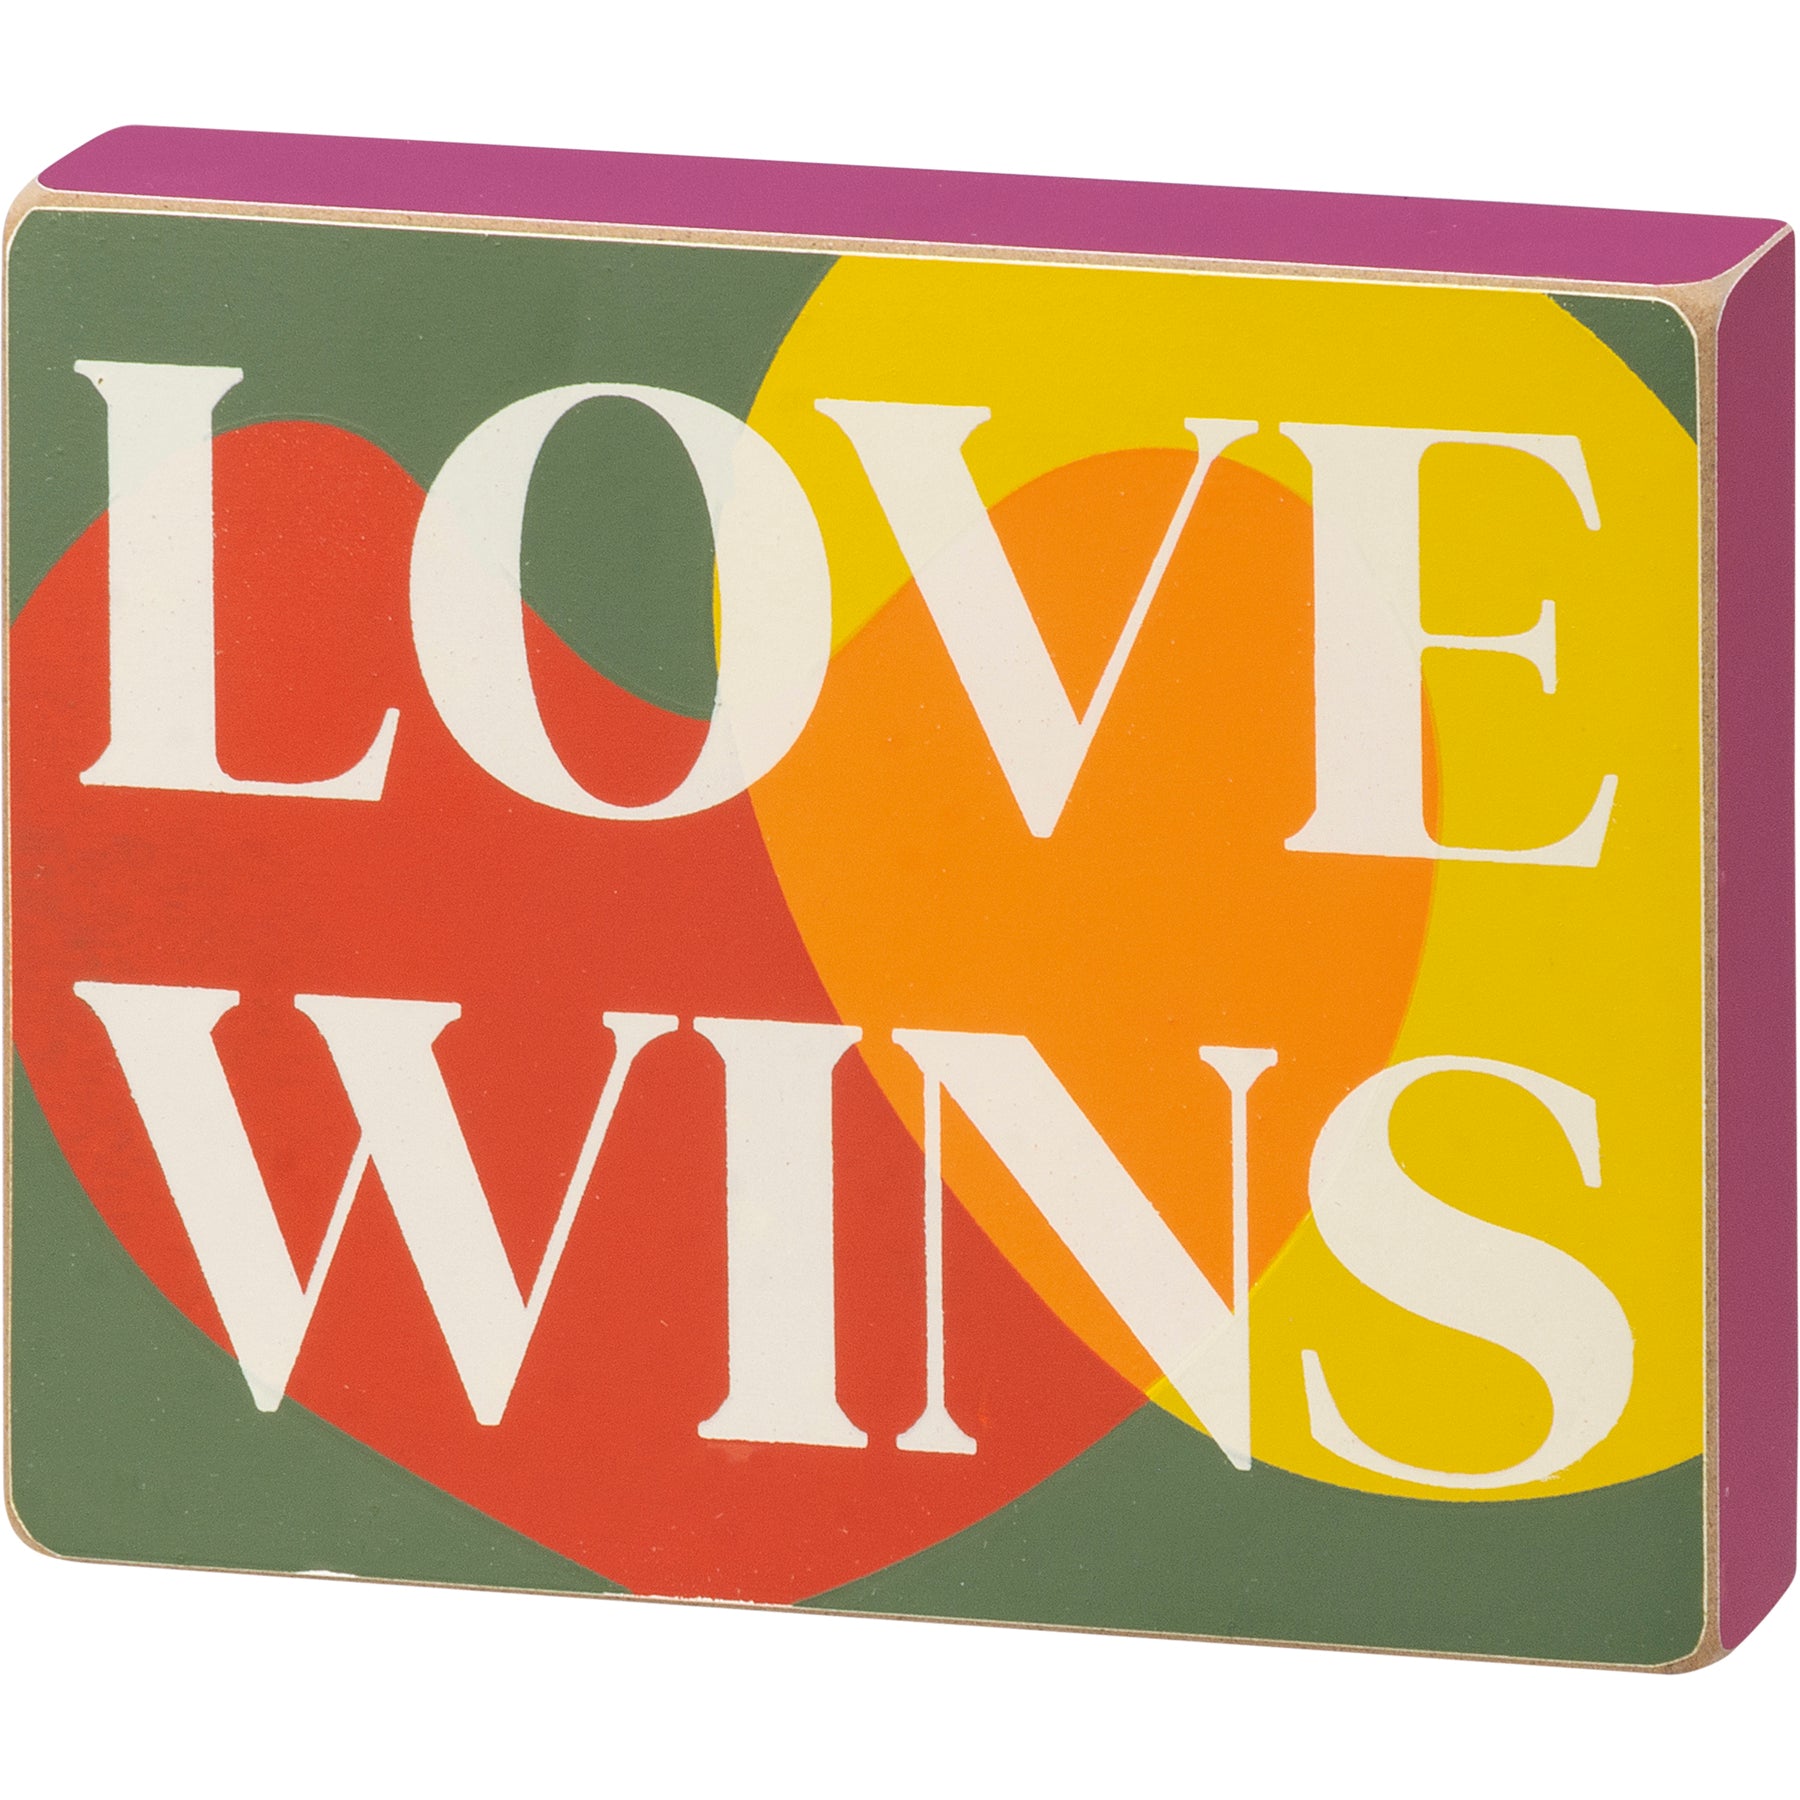 Love Wins Pride Box Sign SolagoHome